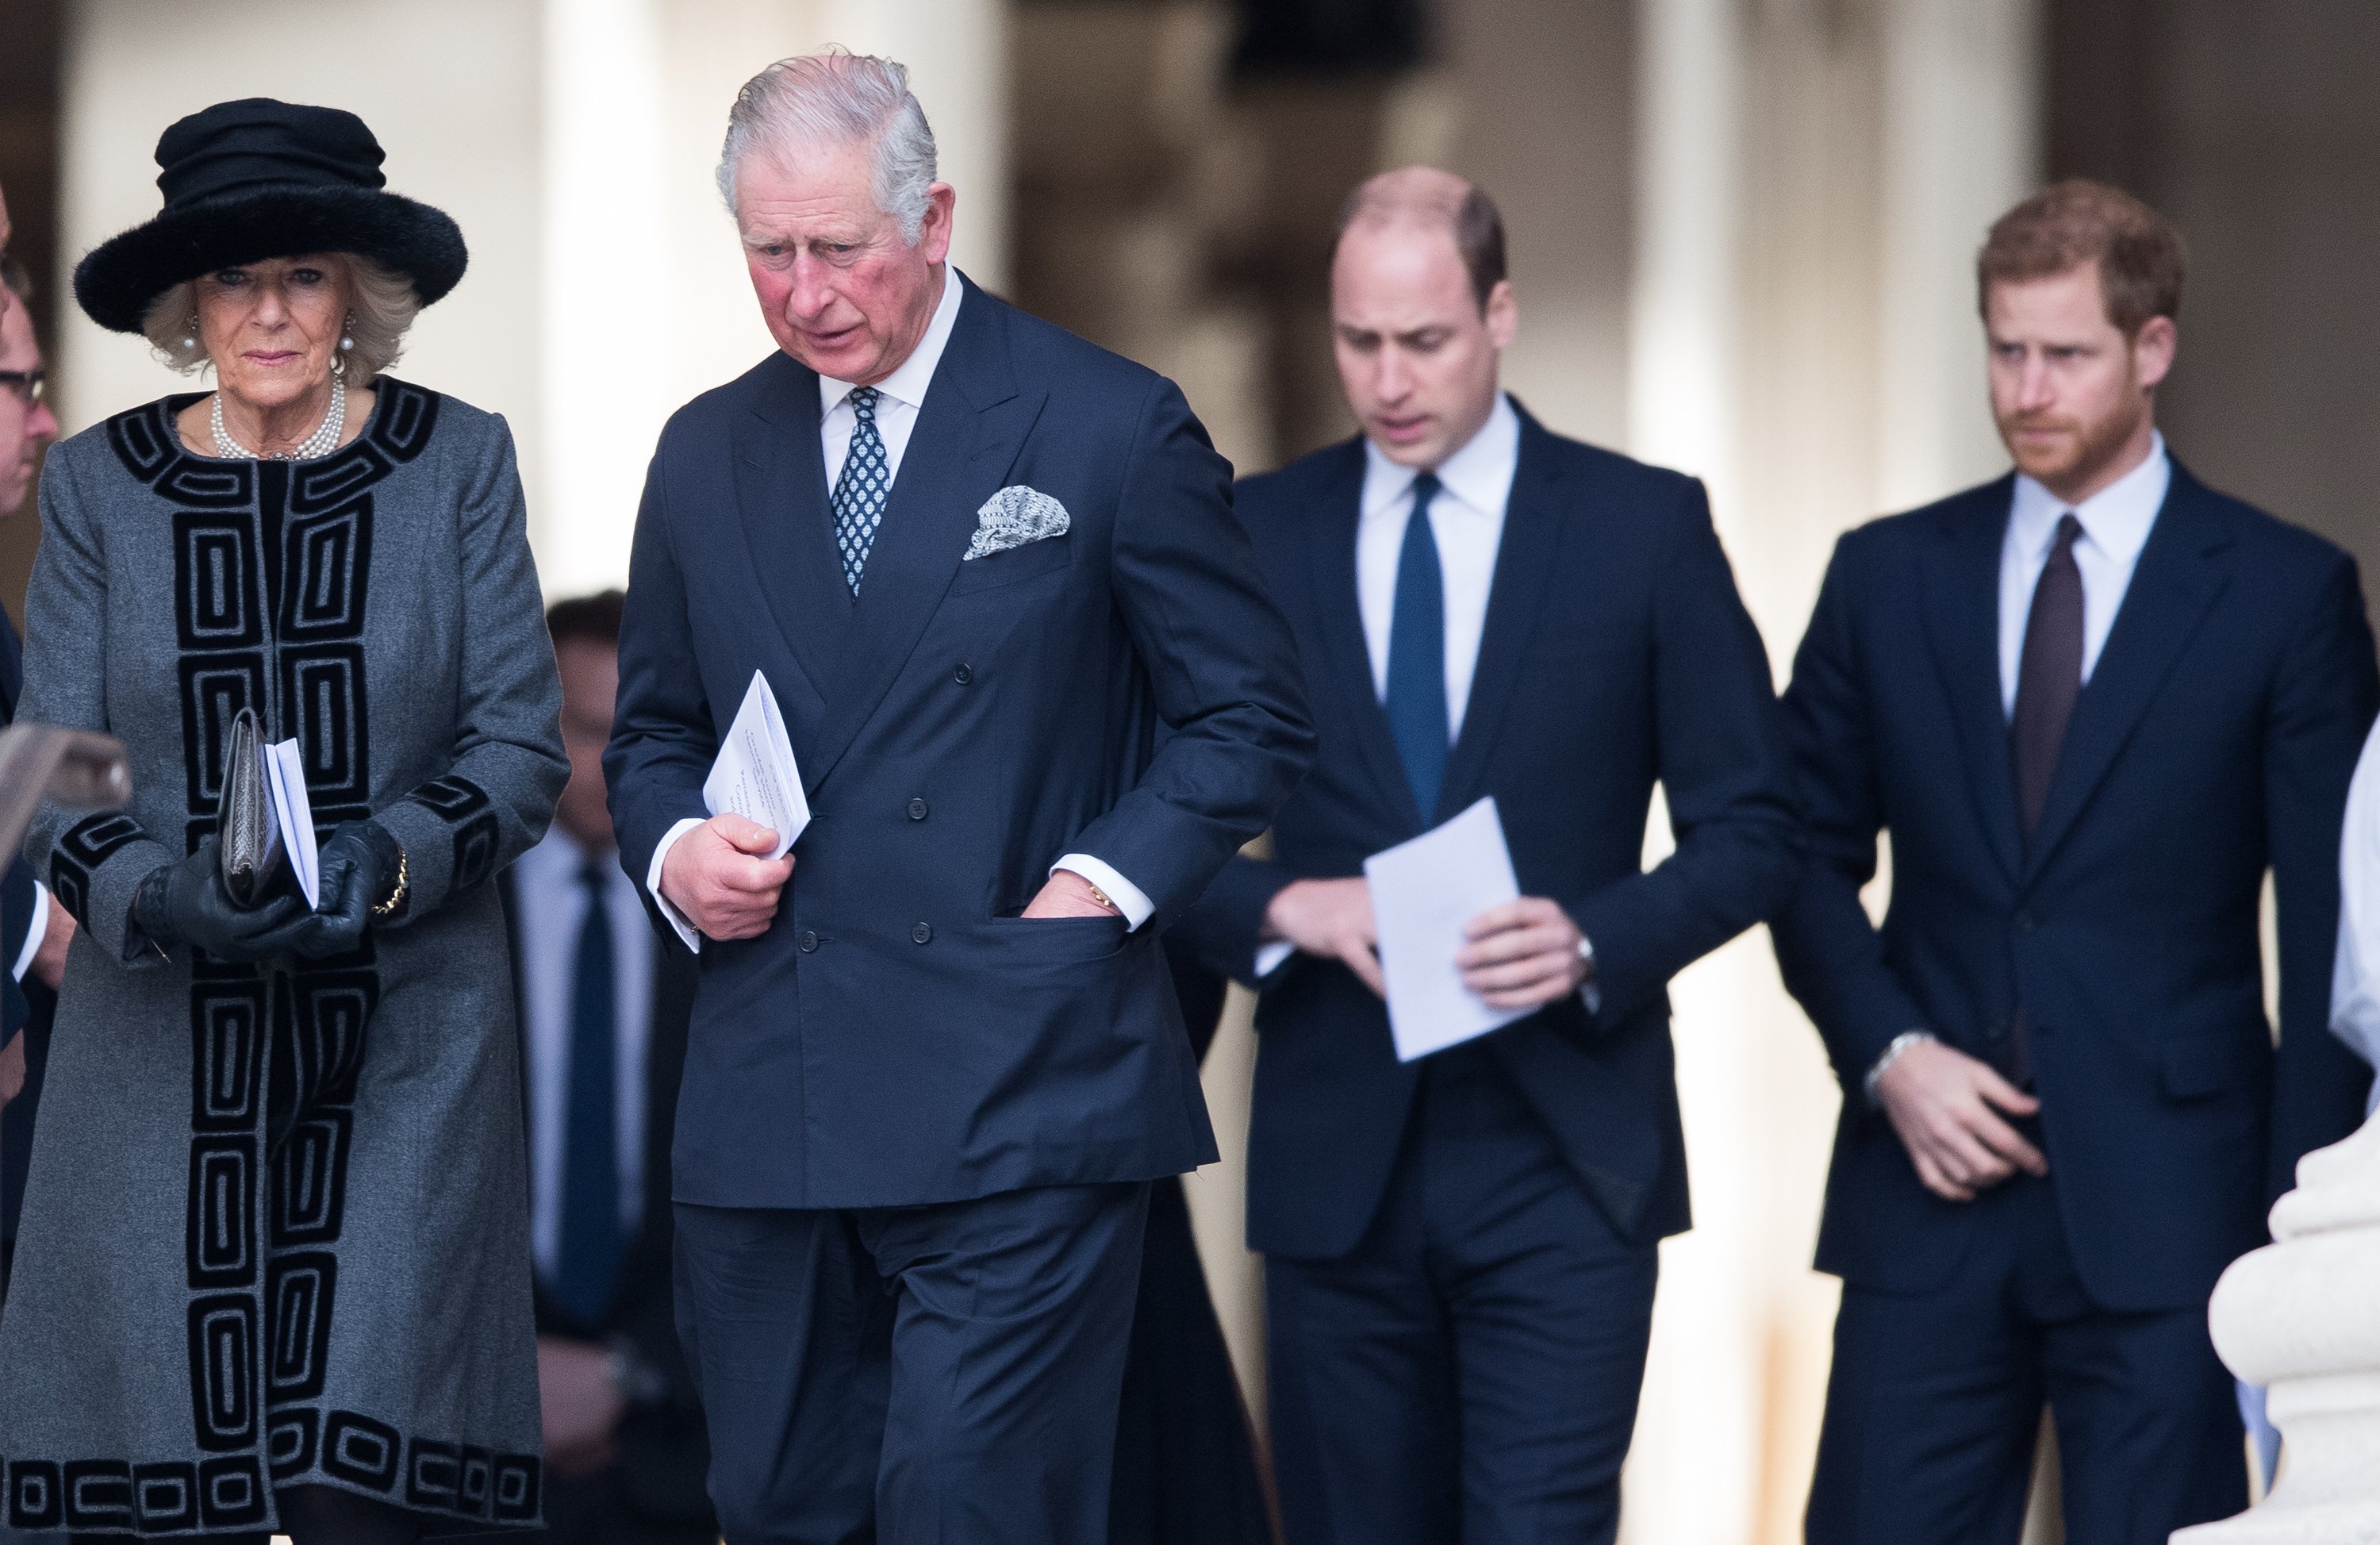 El rey Charles III, la reina consorte Camilla, el príncipe William y el príncipe Harry en Londres, en 2017. | Foto: Getty Images